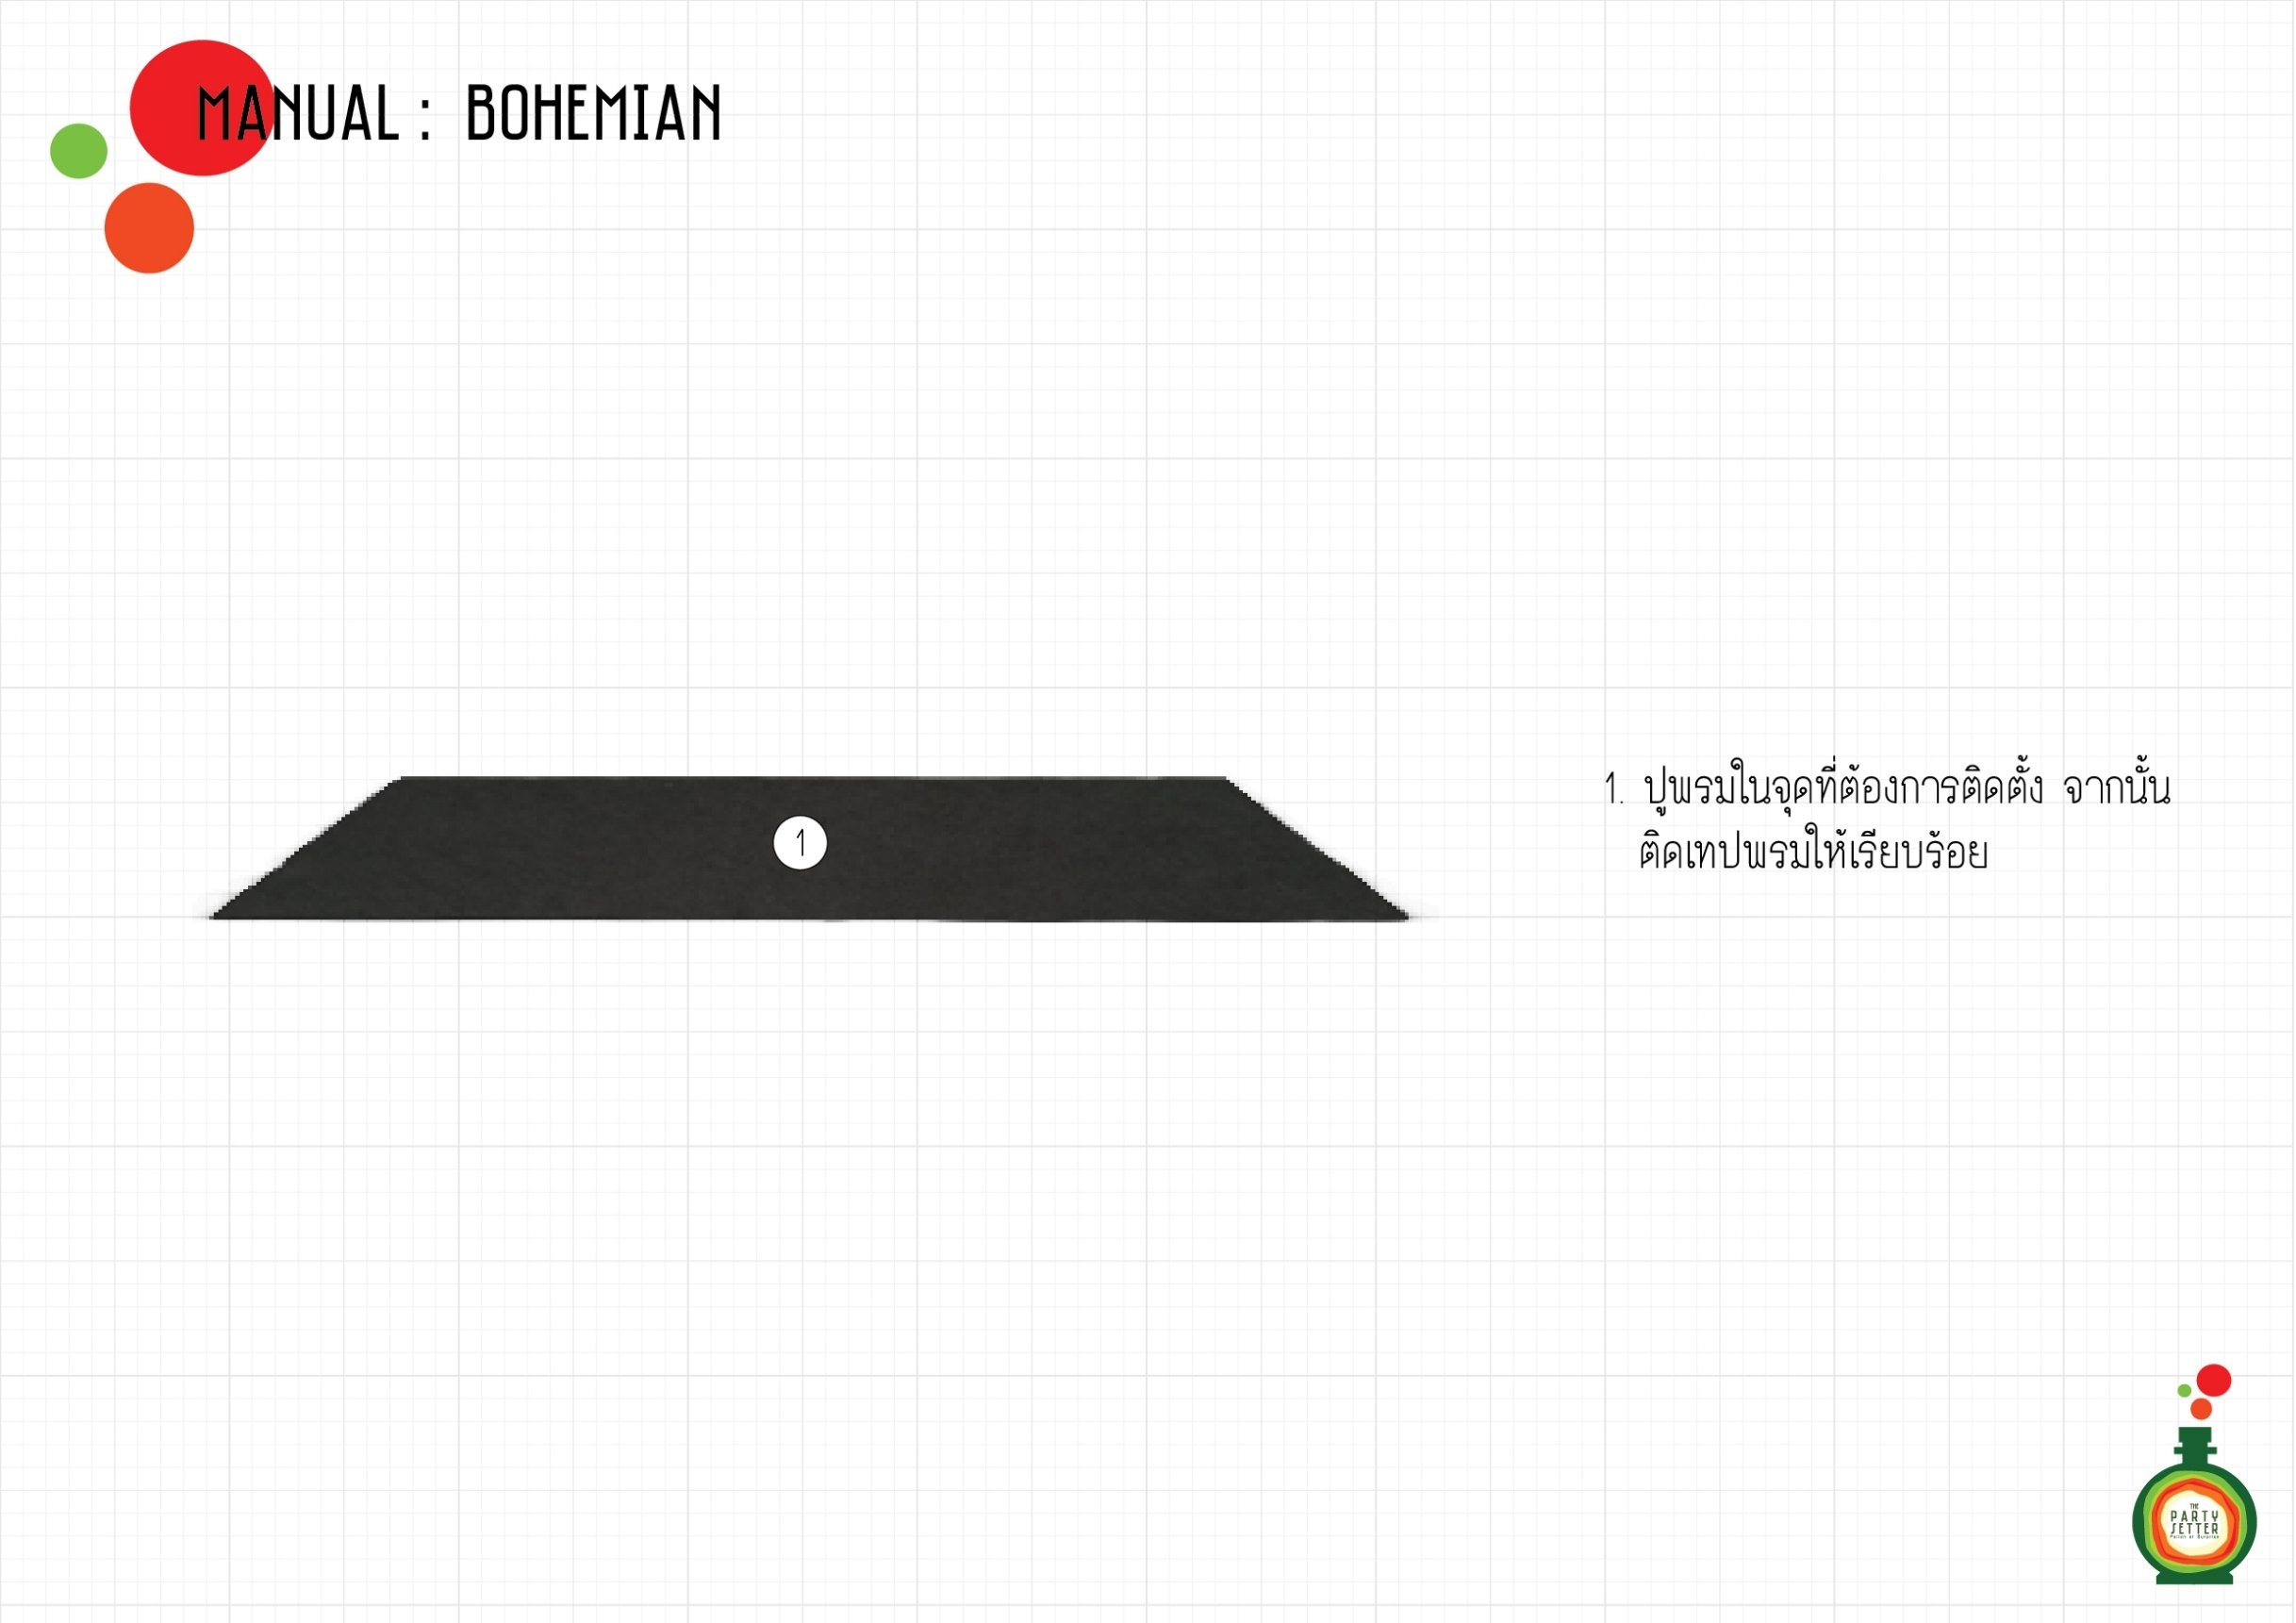 Manual_Bohemian-01-01.jpg